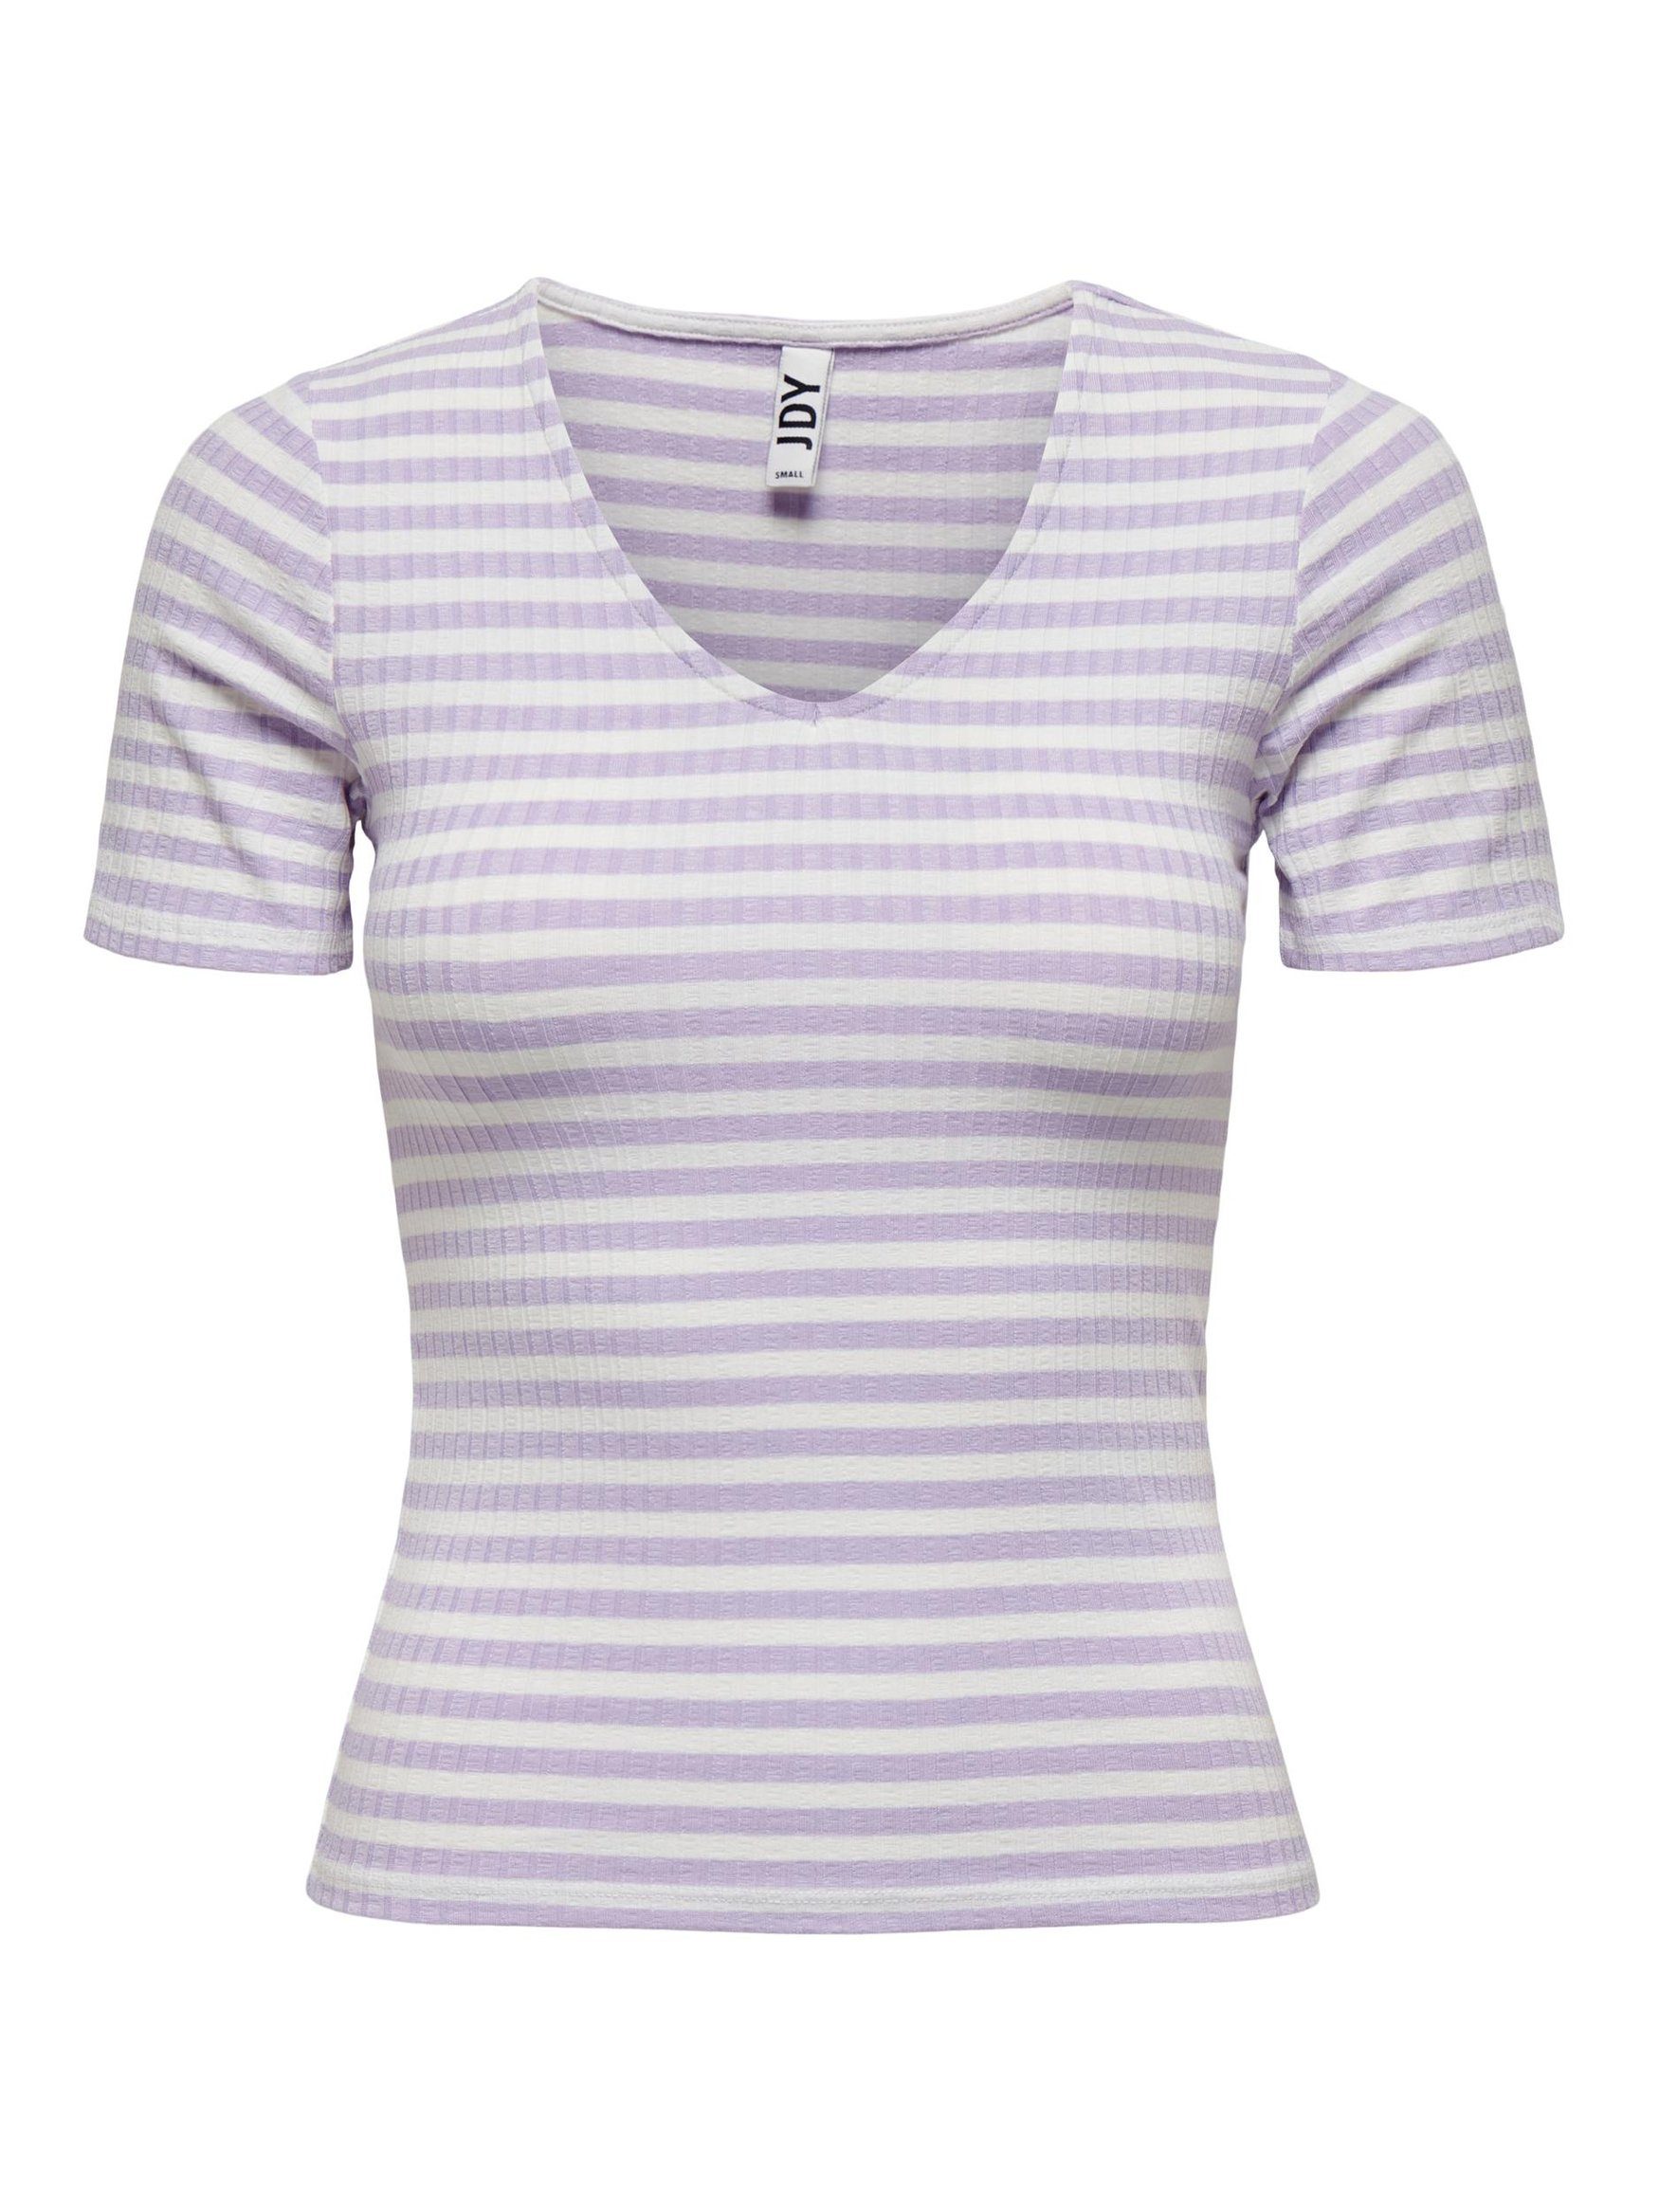 Jacqueline de Yong Shirts online kaufen | OTTO